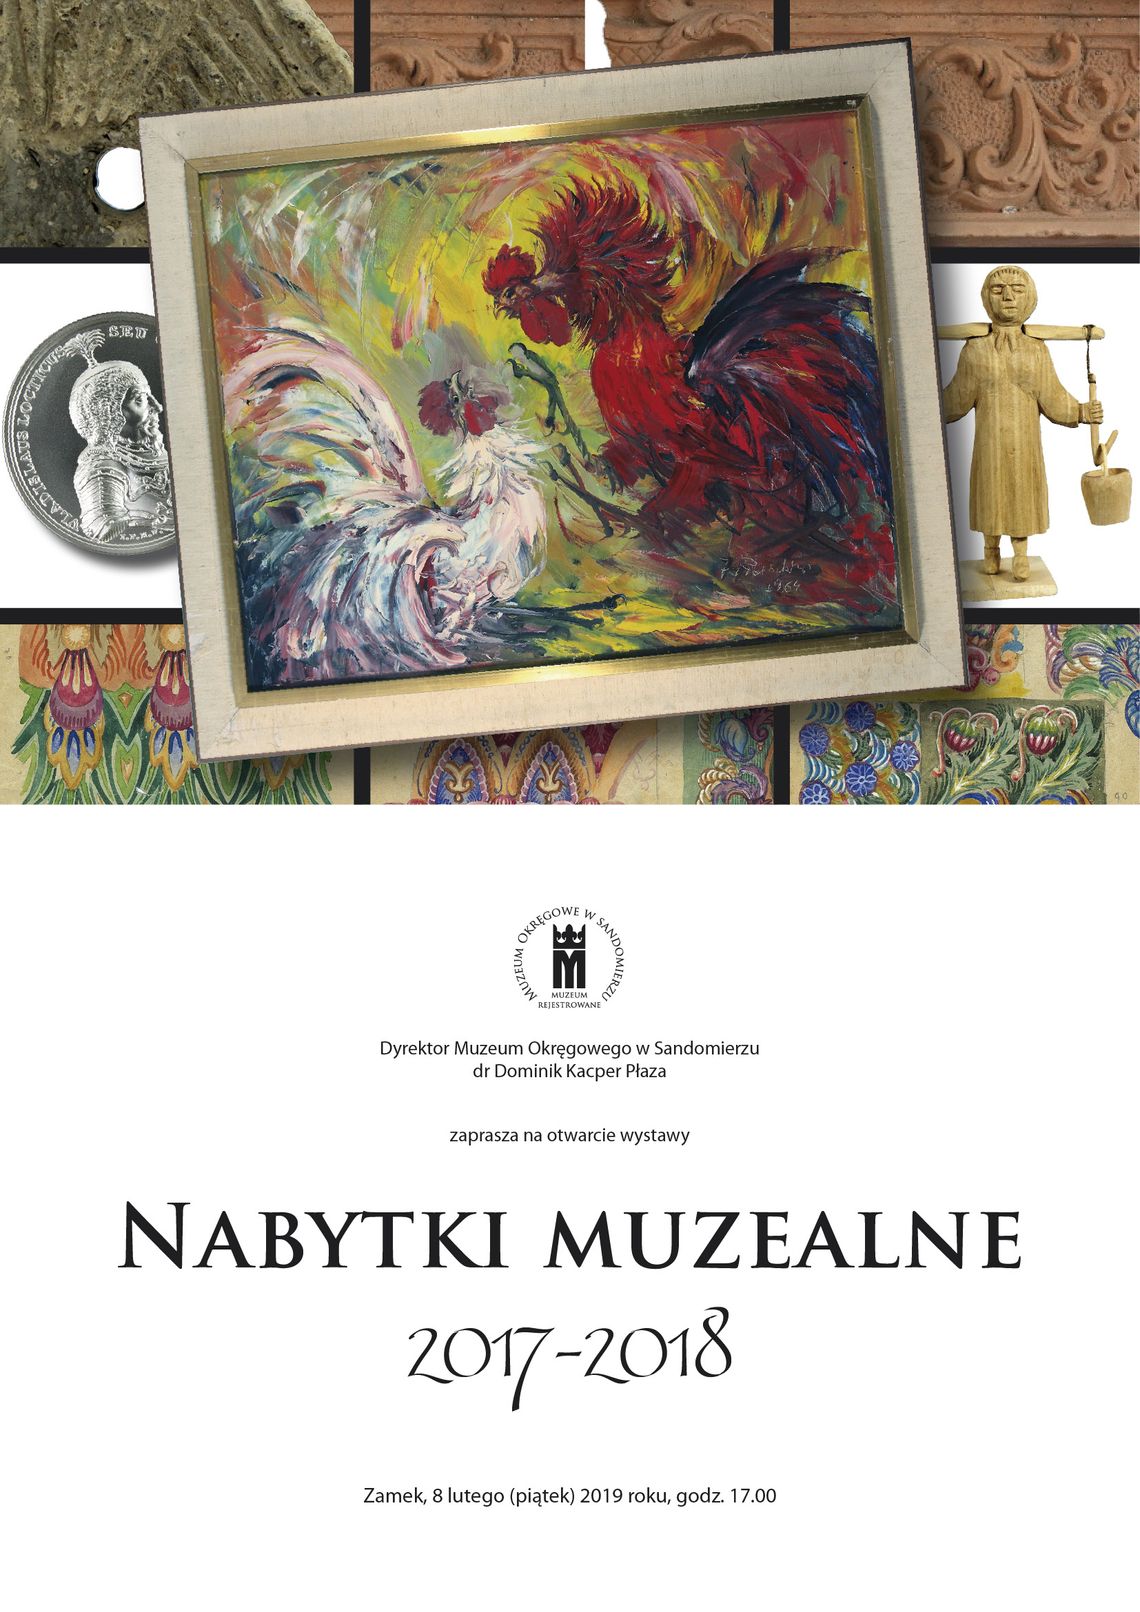 Nabytki muzealne 2017-2018  Muzeum Okręgowego w Sandomierzu